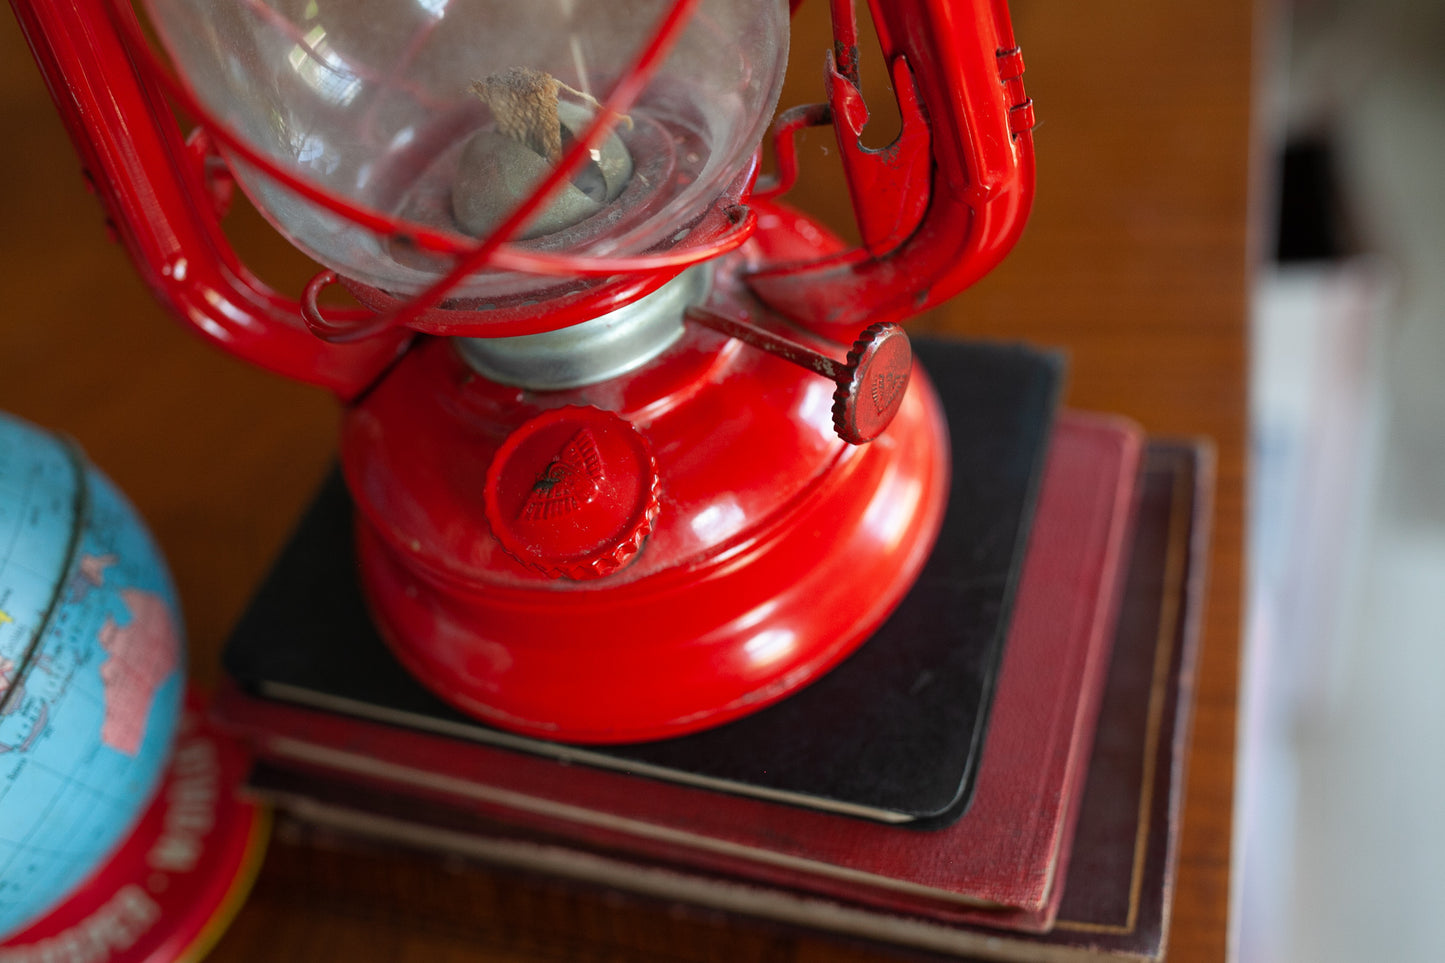 Lantern- Red Vintage Lantern -Winged Wheel No 400 Lantern, Made in Japan, Kerosene Oil Lamp 9.5” Vintage